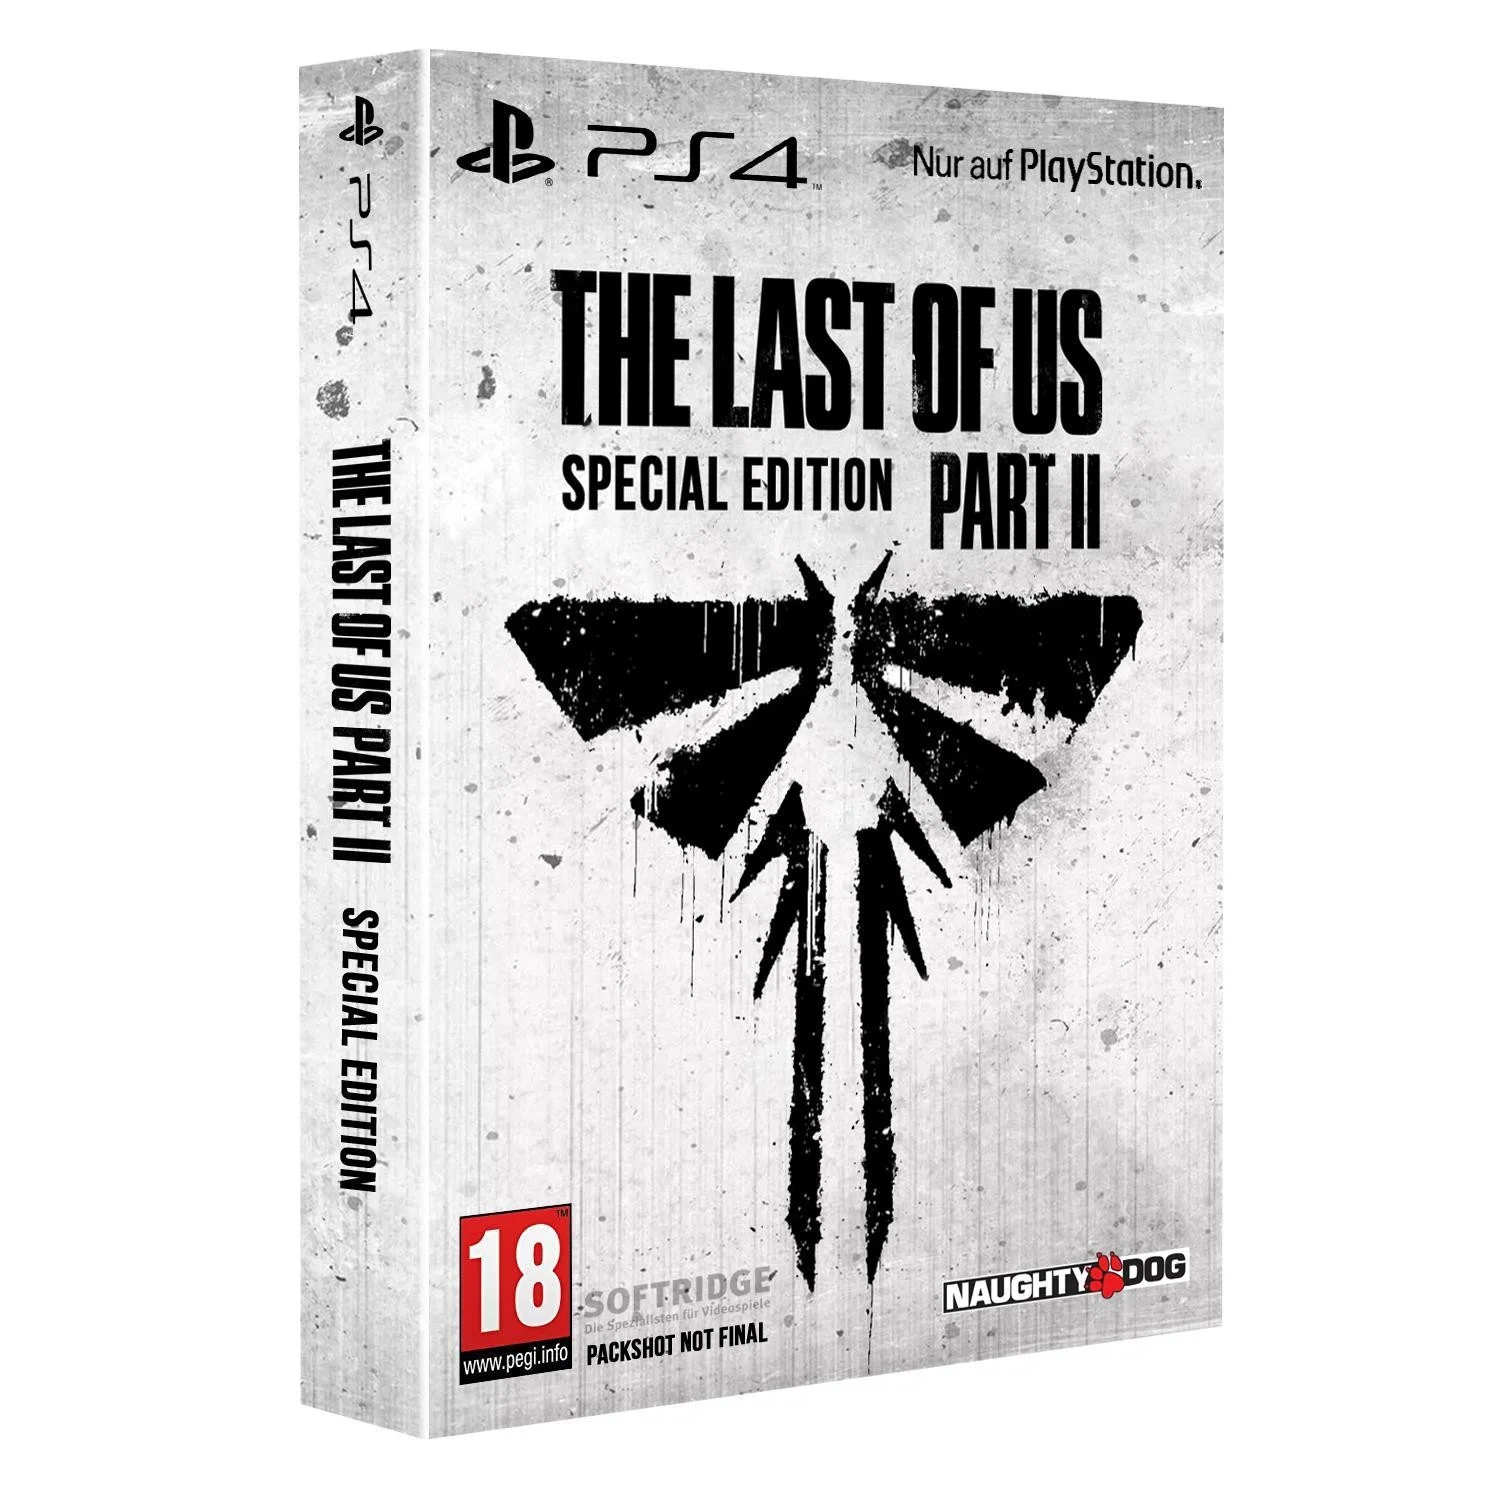 Розница: The Last of Us: Part II может выйти 28 февраля в трёх изданиях - фото 2